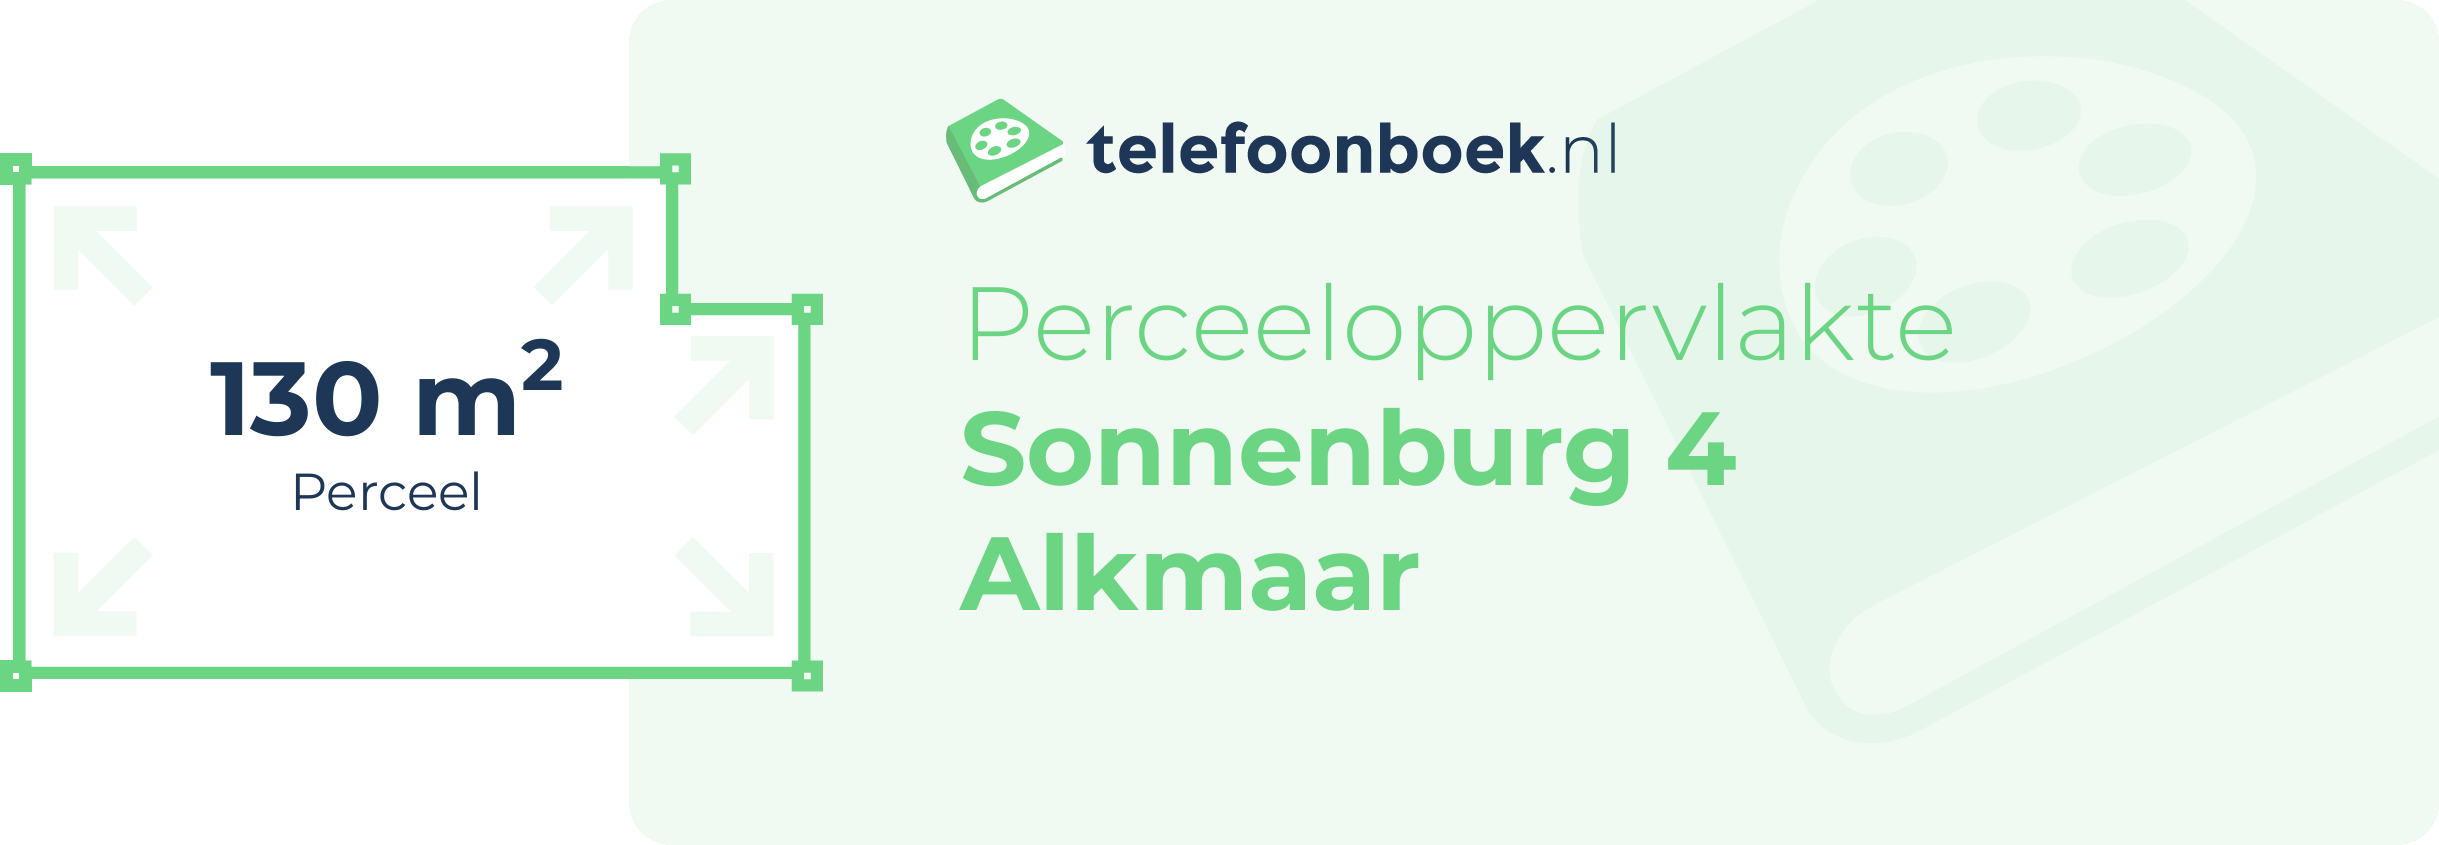 Perceeloppervlakte Sonnenburg 4 Alkmaar